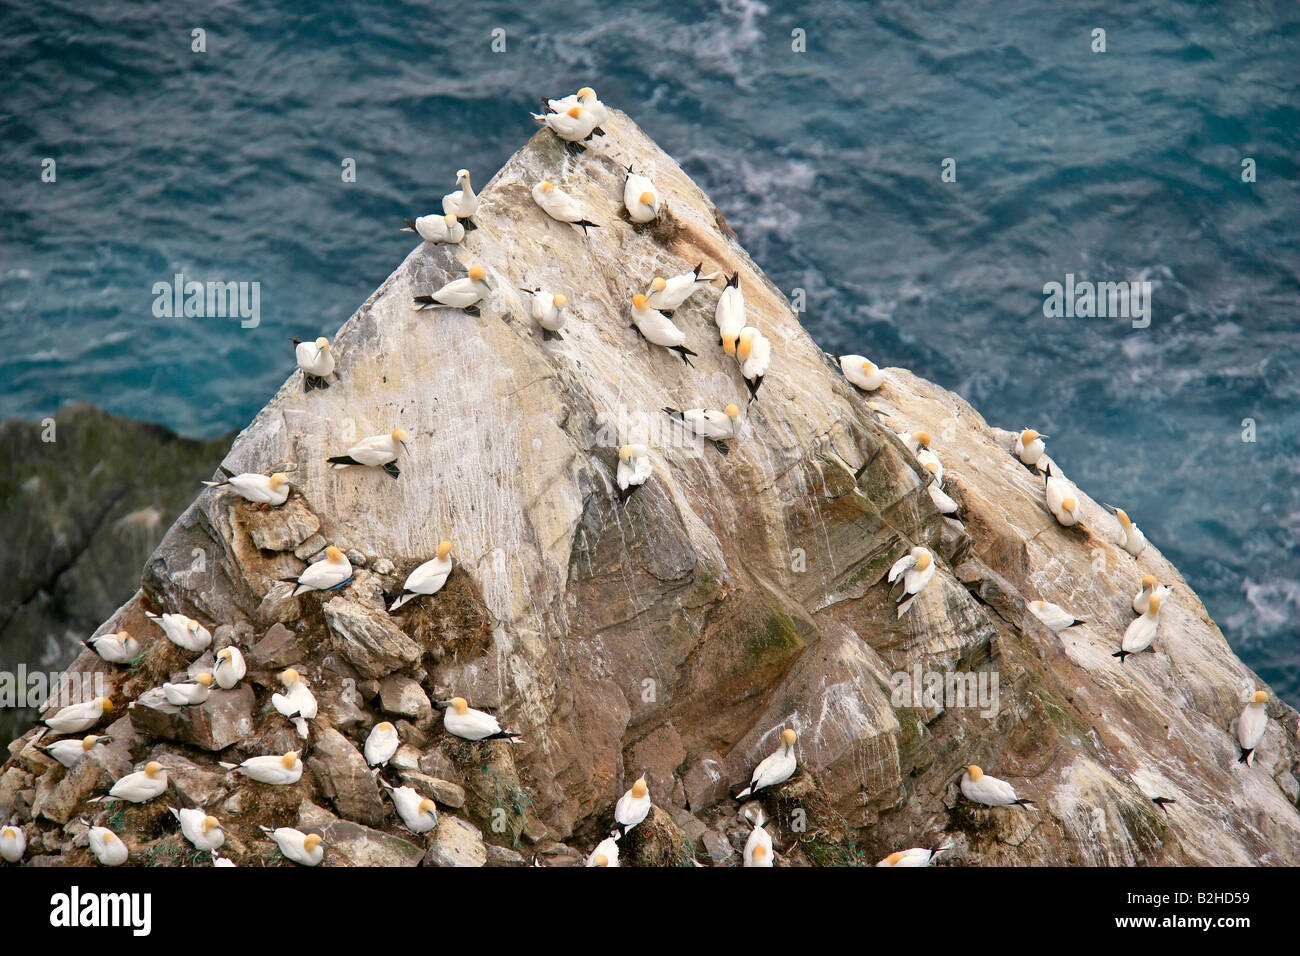 Gannetry Sula bassana Bassan nicheurs sur roche exposée vu de dessus la Réserve Naturelle Hermaness Unst Shetland Isles Scotland UK Banque D'Images